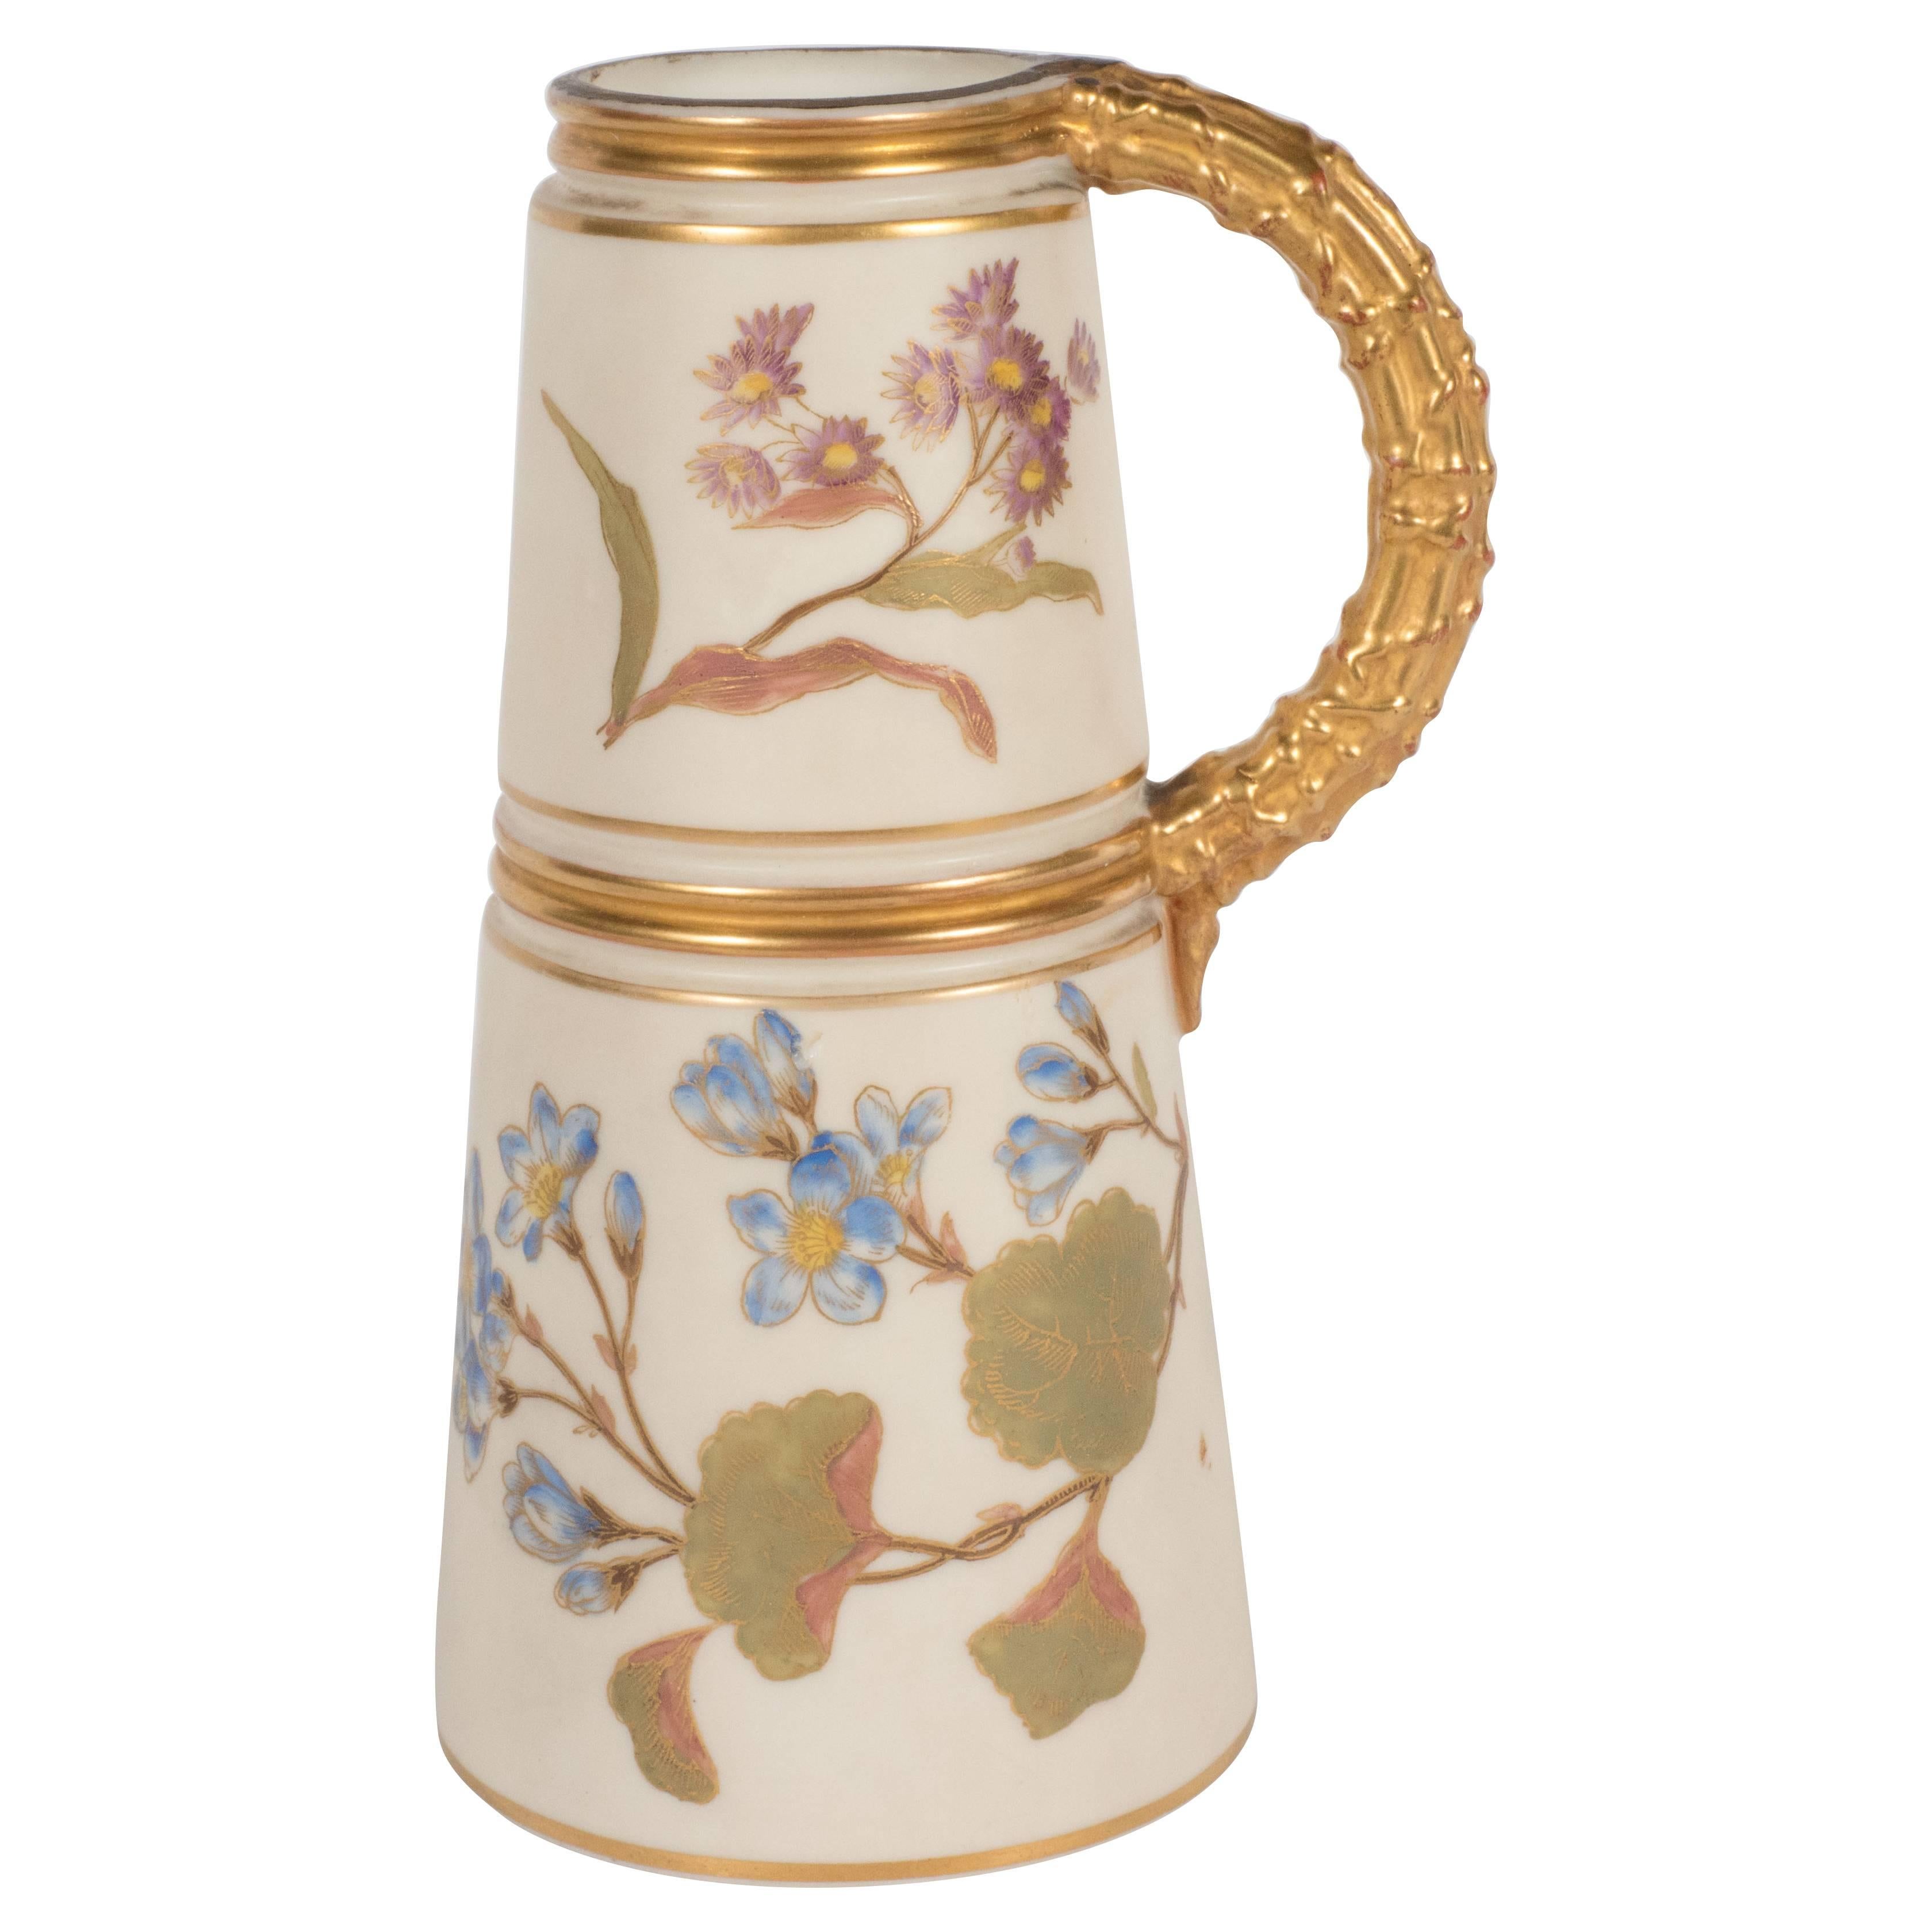 Hand-Painted Gilded Art Nouveau Bonn Royal Worcester Vase with Floral Motif